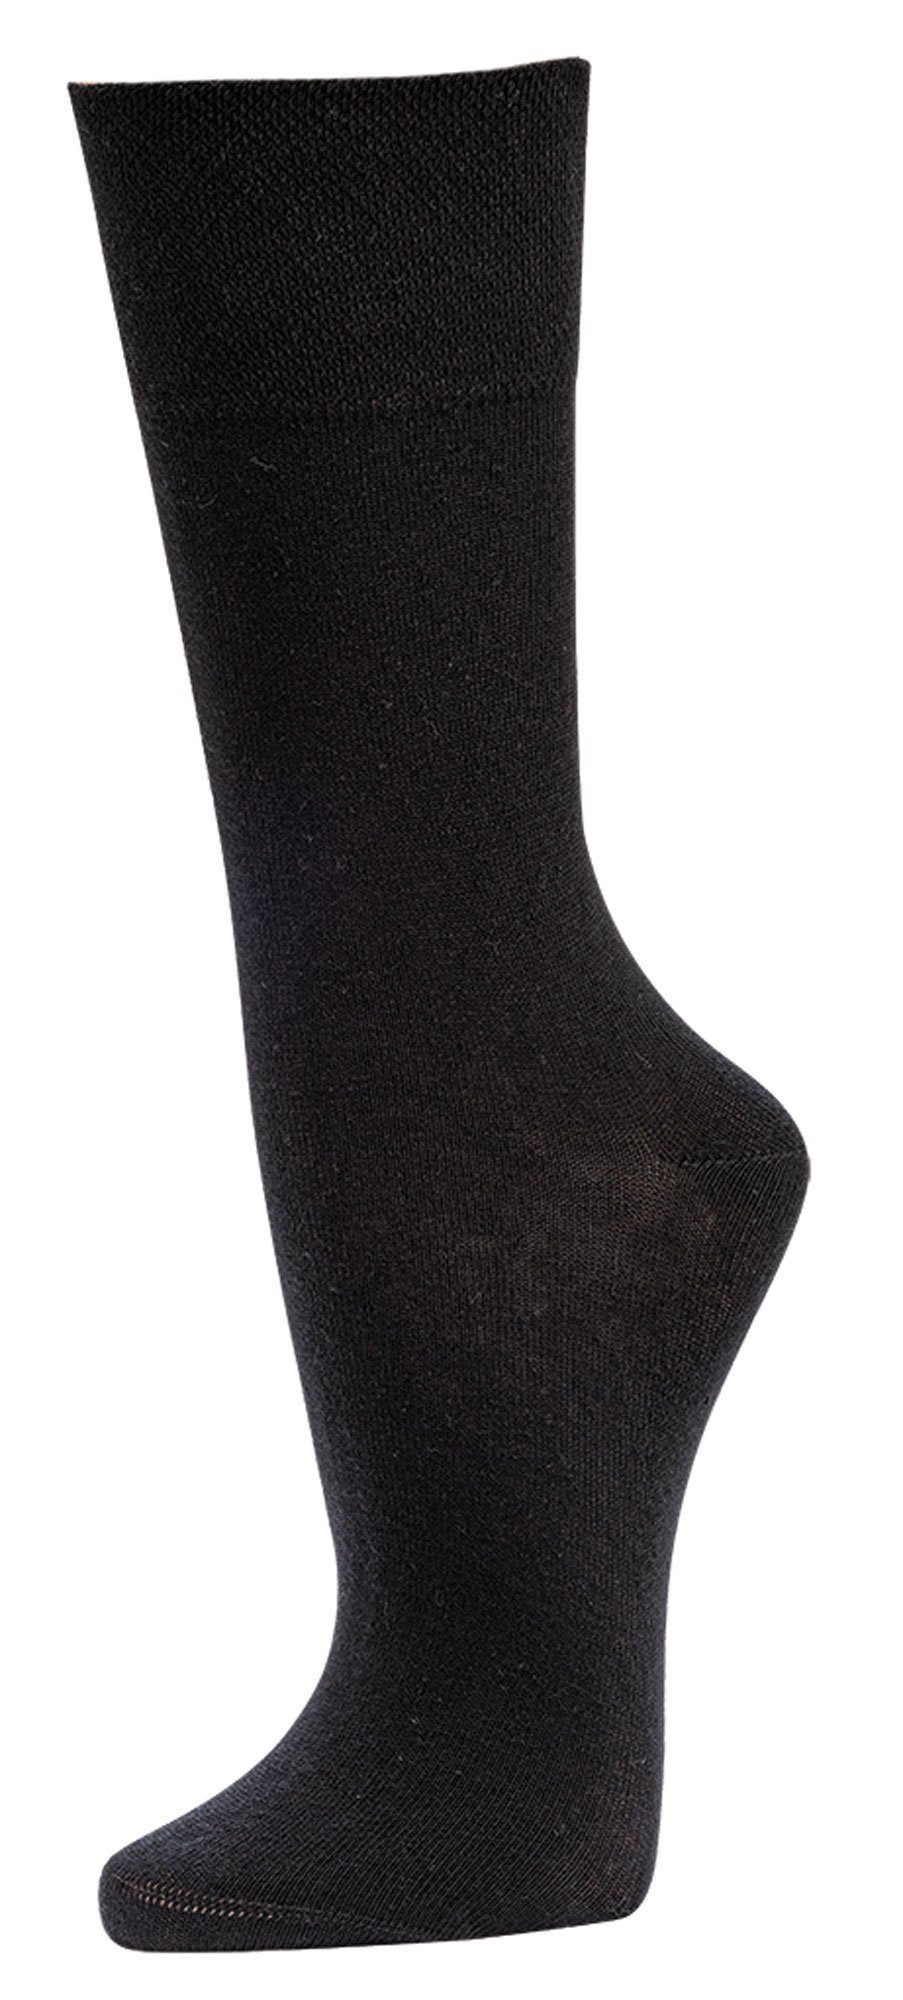 TippTexx 24 Socken Bio-Baumwolle Wellness-Socken Schwarz mit Anti-Loch-Garantie 6 aus Paar